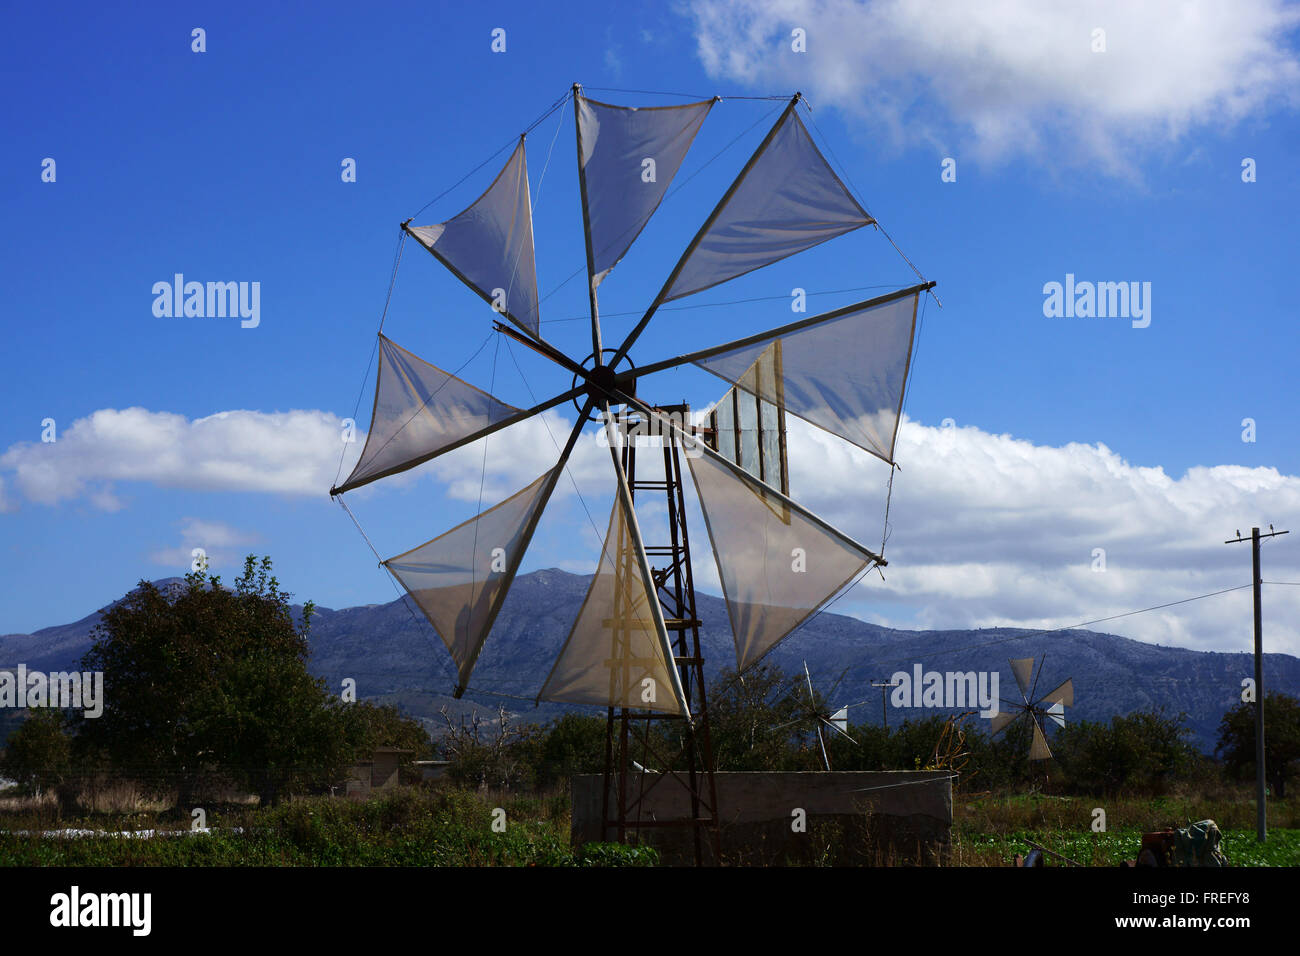 Les moulins à vent sur le plateau de Lassithi, île de Crète, Grèce Banque D'Images